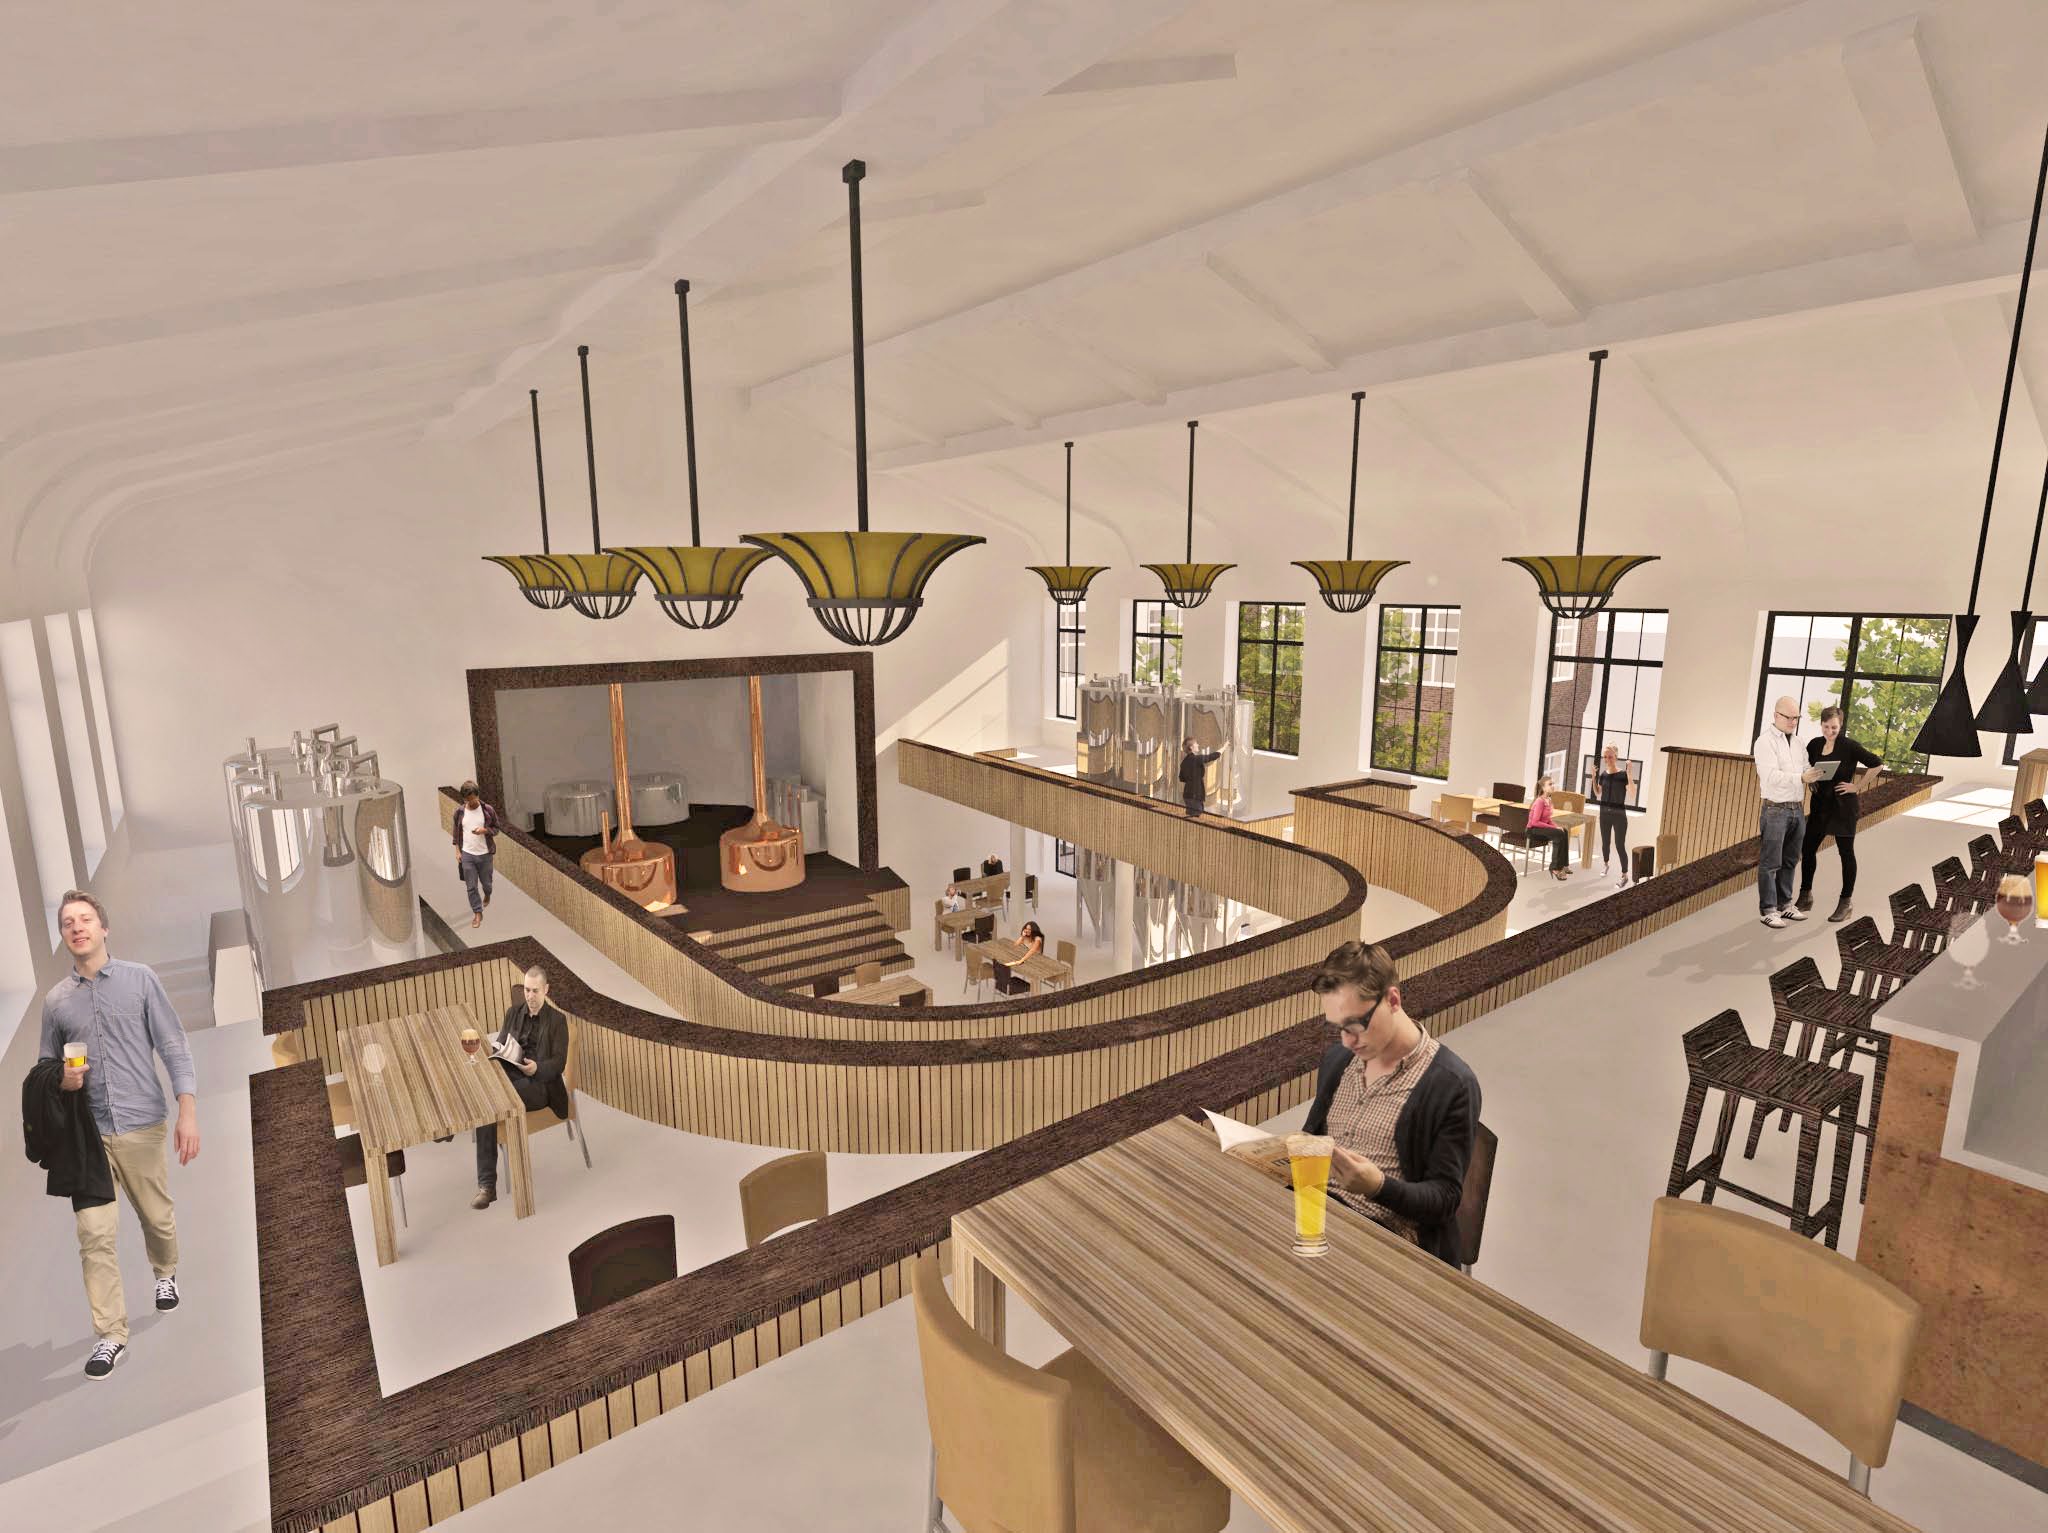 ketelzaal - café - bar Het Tivoli complex is in acht eeuwen historie achtereenvolgens getransformeerd van klooster naar weeshuis, V huis, en uiteindelijk tot poppodium.